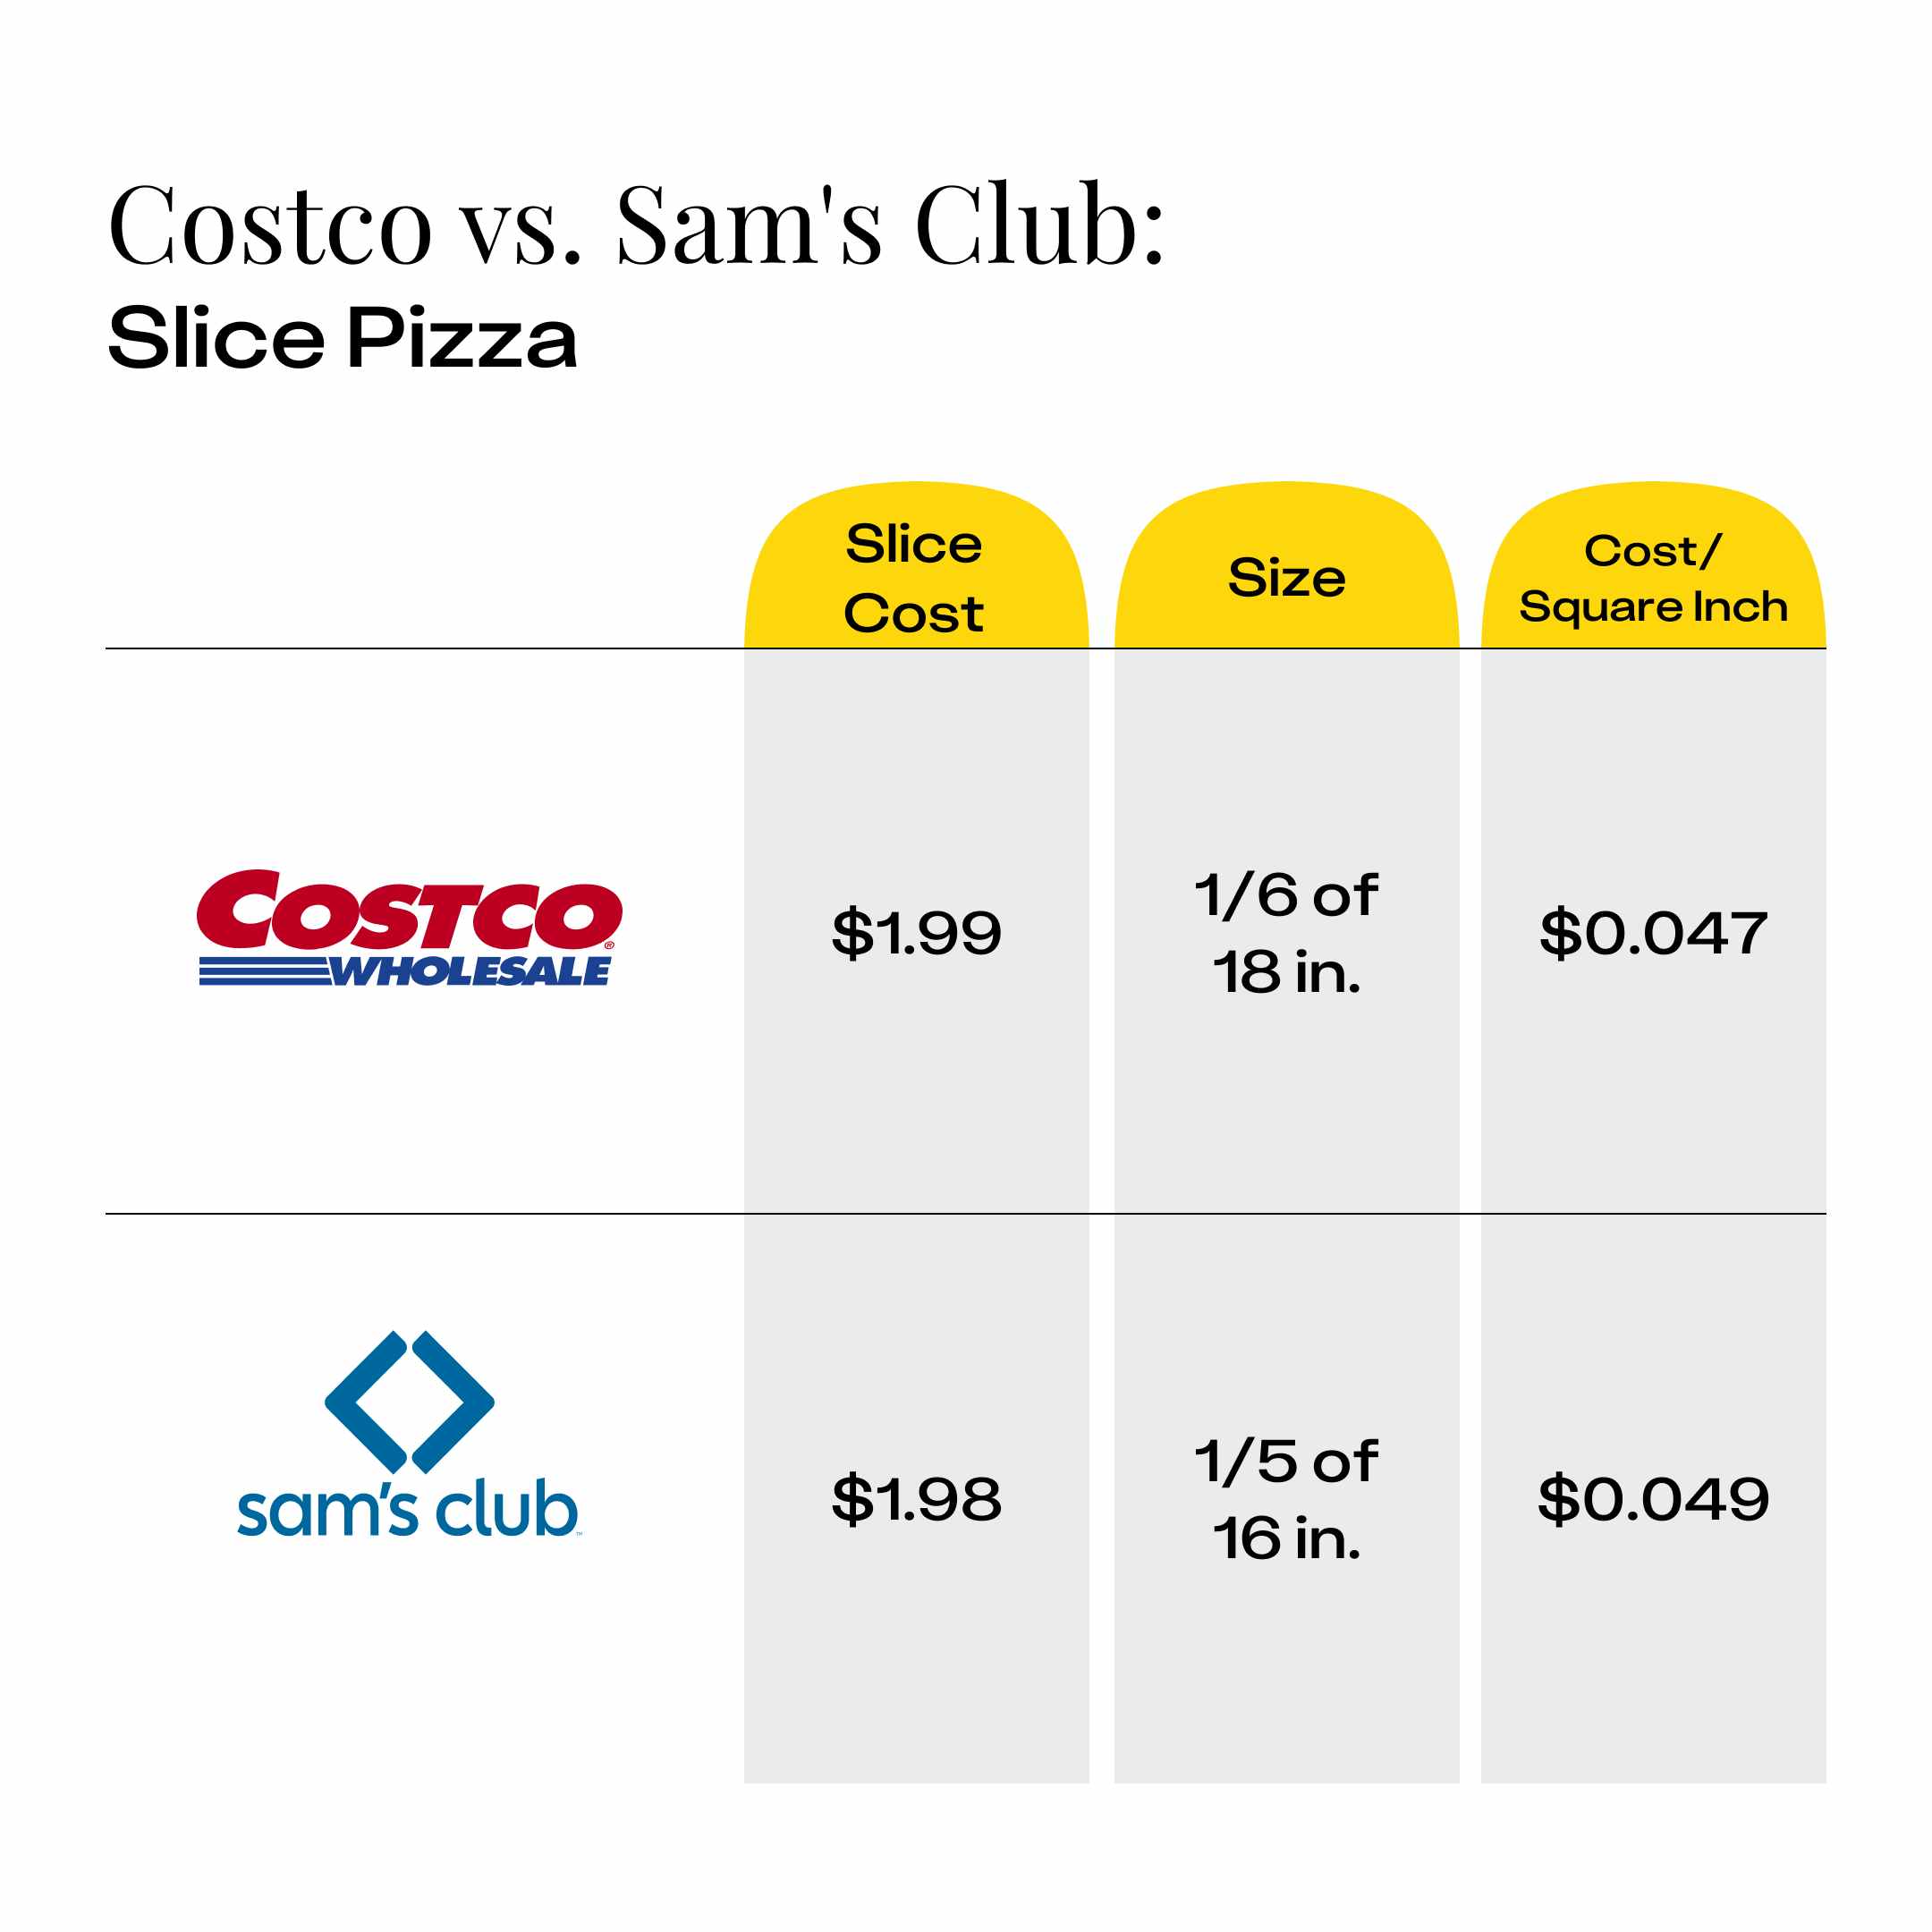 Cost comparison of Costco pizza slice vs Sam's Club pizza slice showing the cost per square inch.